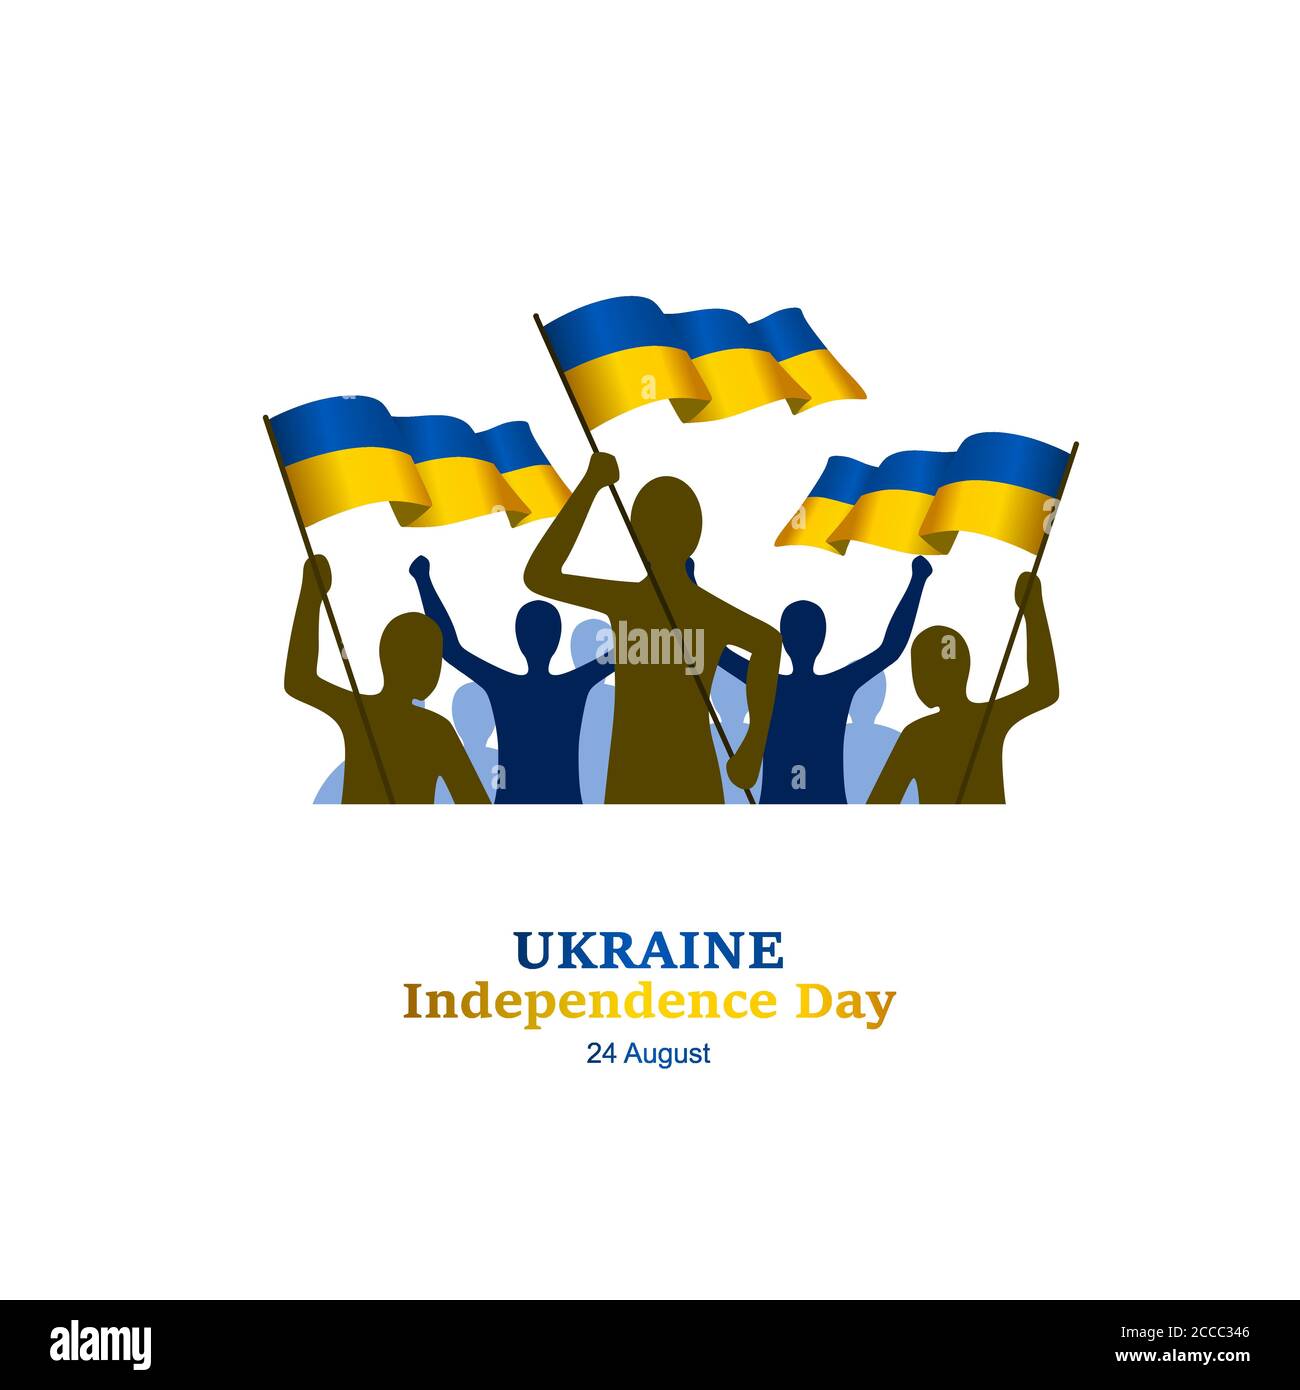 ukraine Unabhängigkeitstag Vektor-Illustration, um die Ukraine wichtigen Tag am 24. August begrüßen, zusätzliche Größe gehören Schicht für Schicht Stock Vektor